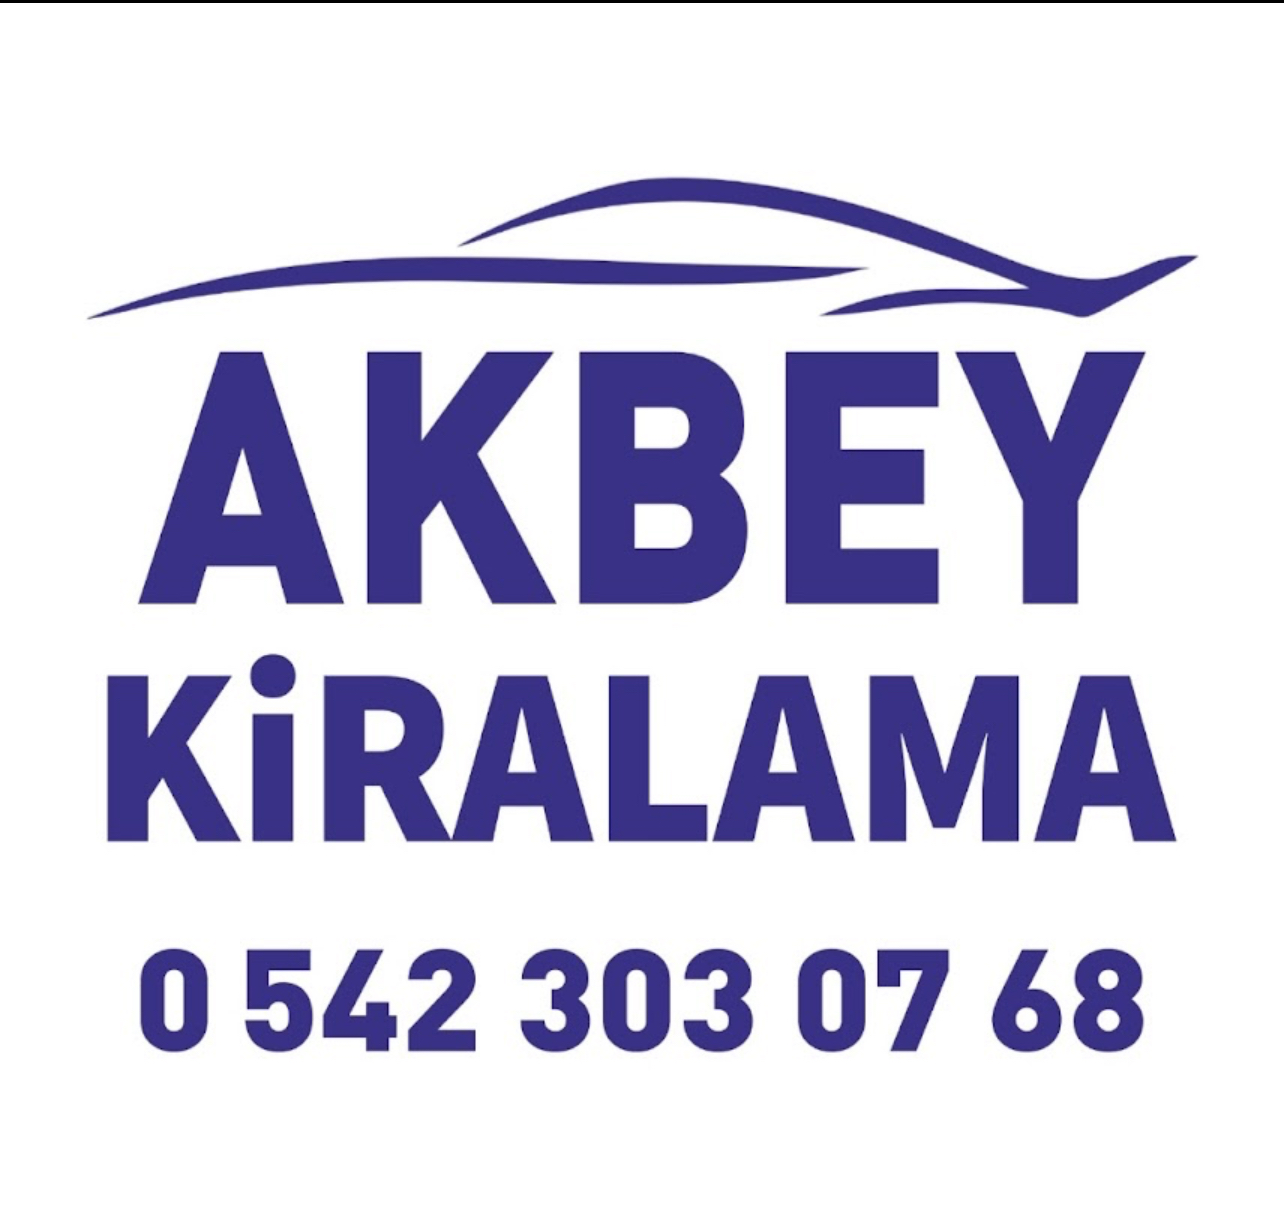 Akbey Kiralama